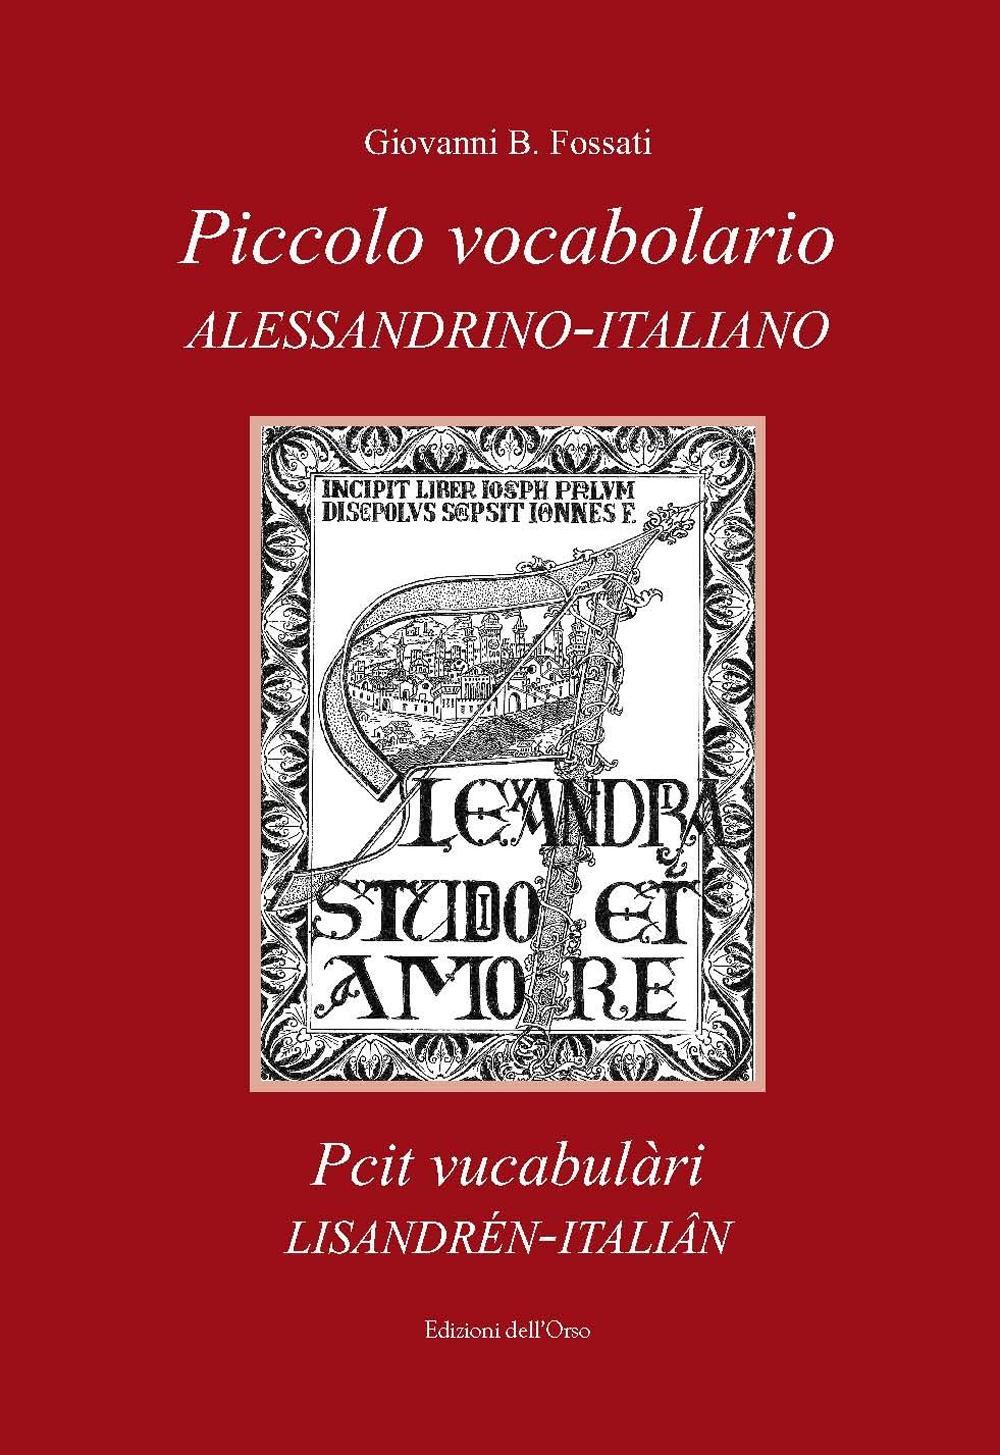 Piccolo vocabolario alessandrino-italiano-Pcit vucabulàri lisandrén-italiân